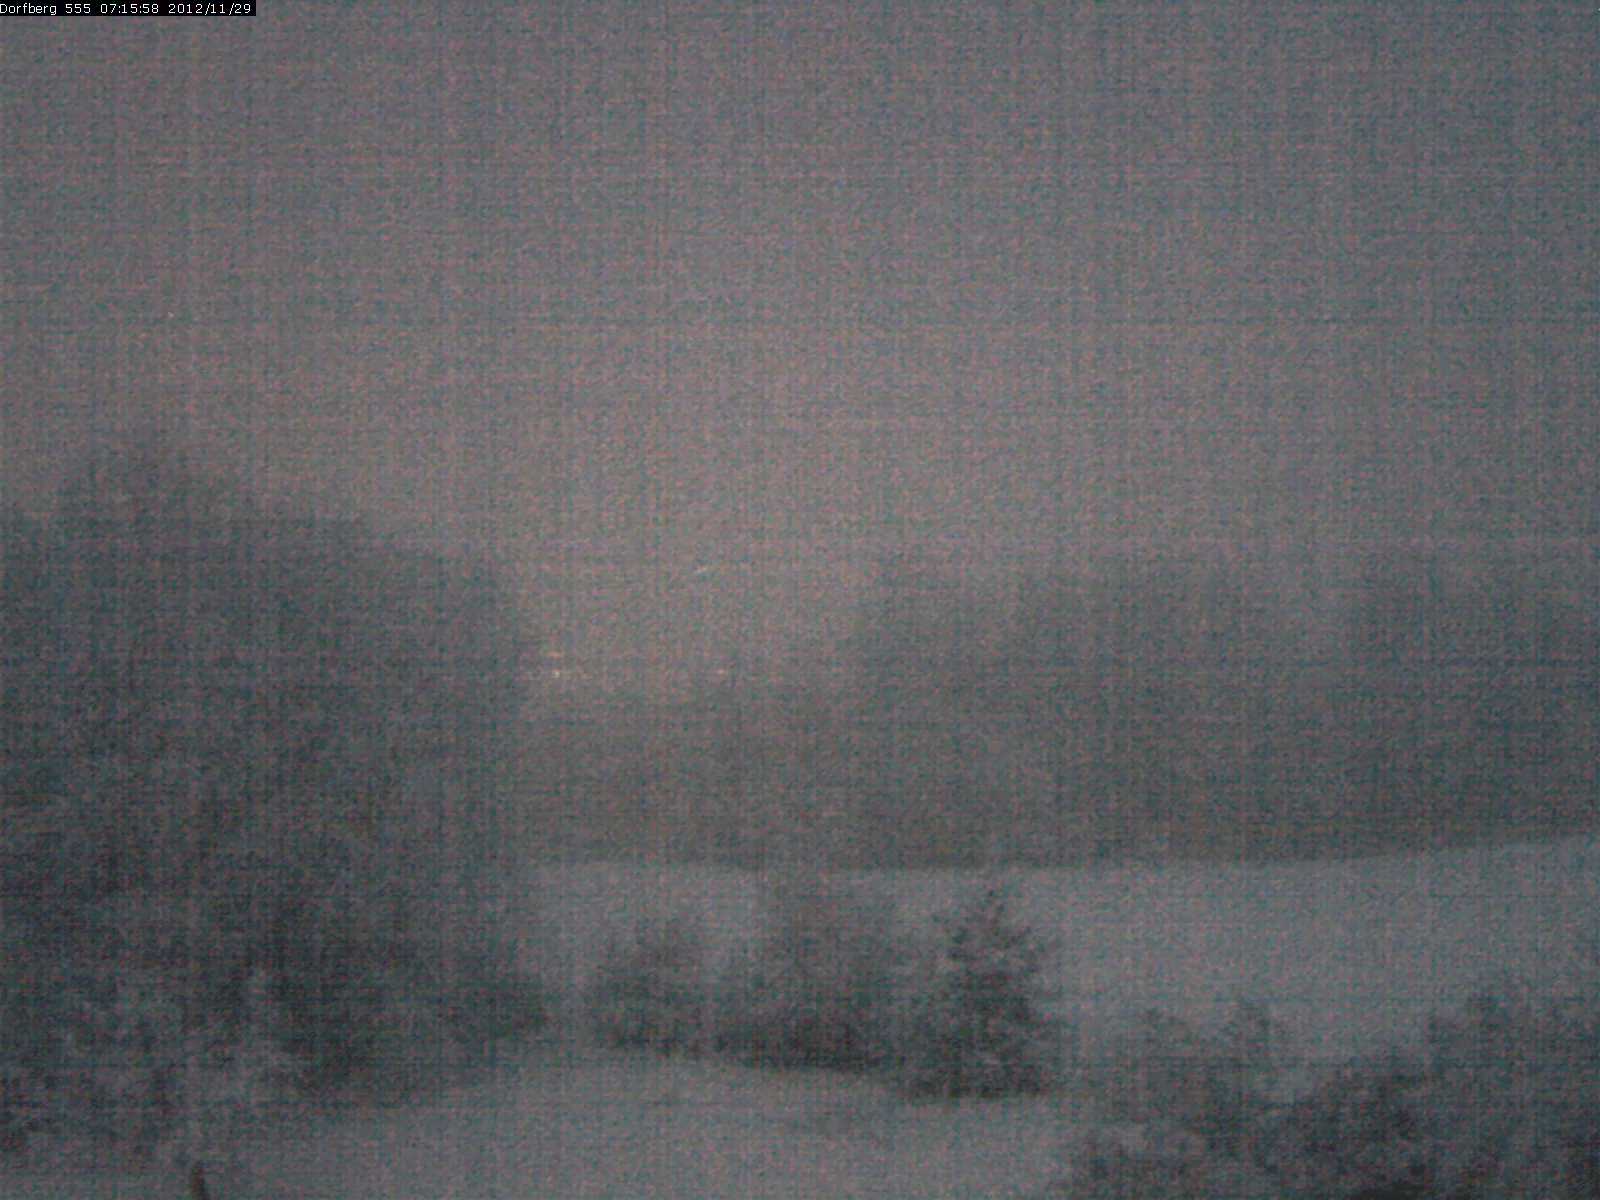 Webcam-Bild: Aussicht vom Dorfberg in Langnau 20121129-071600